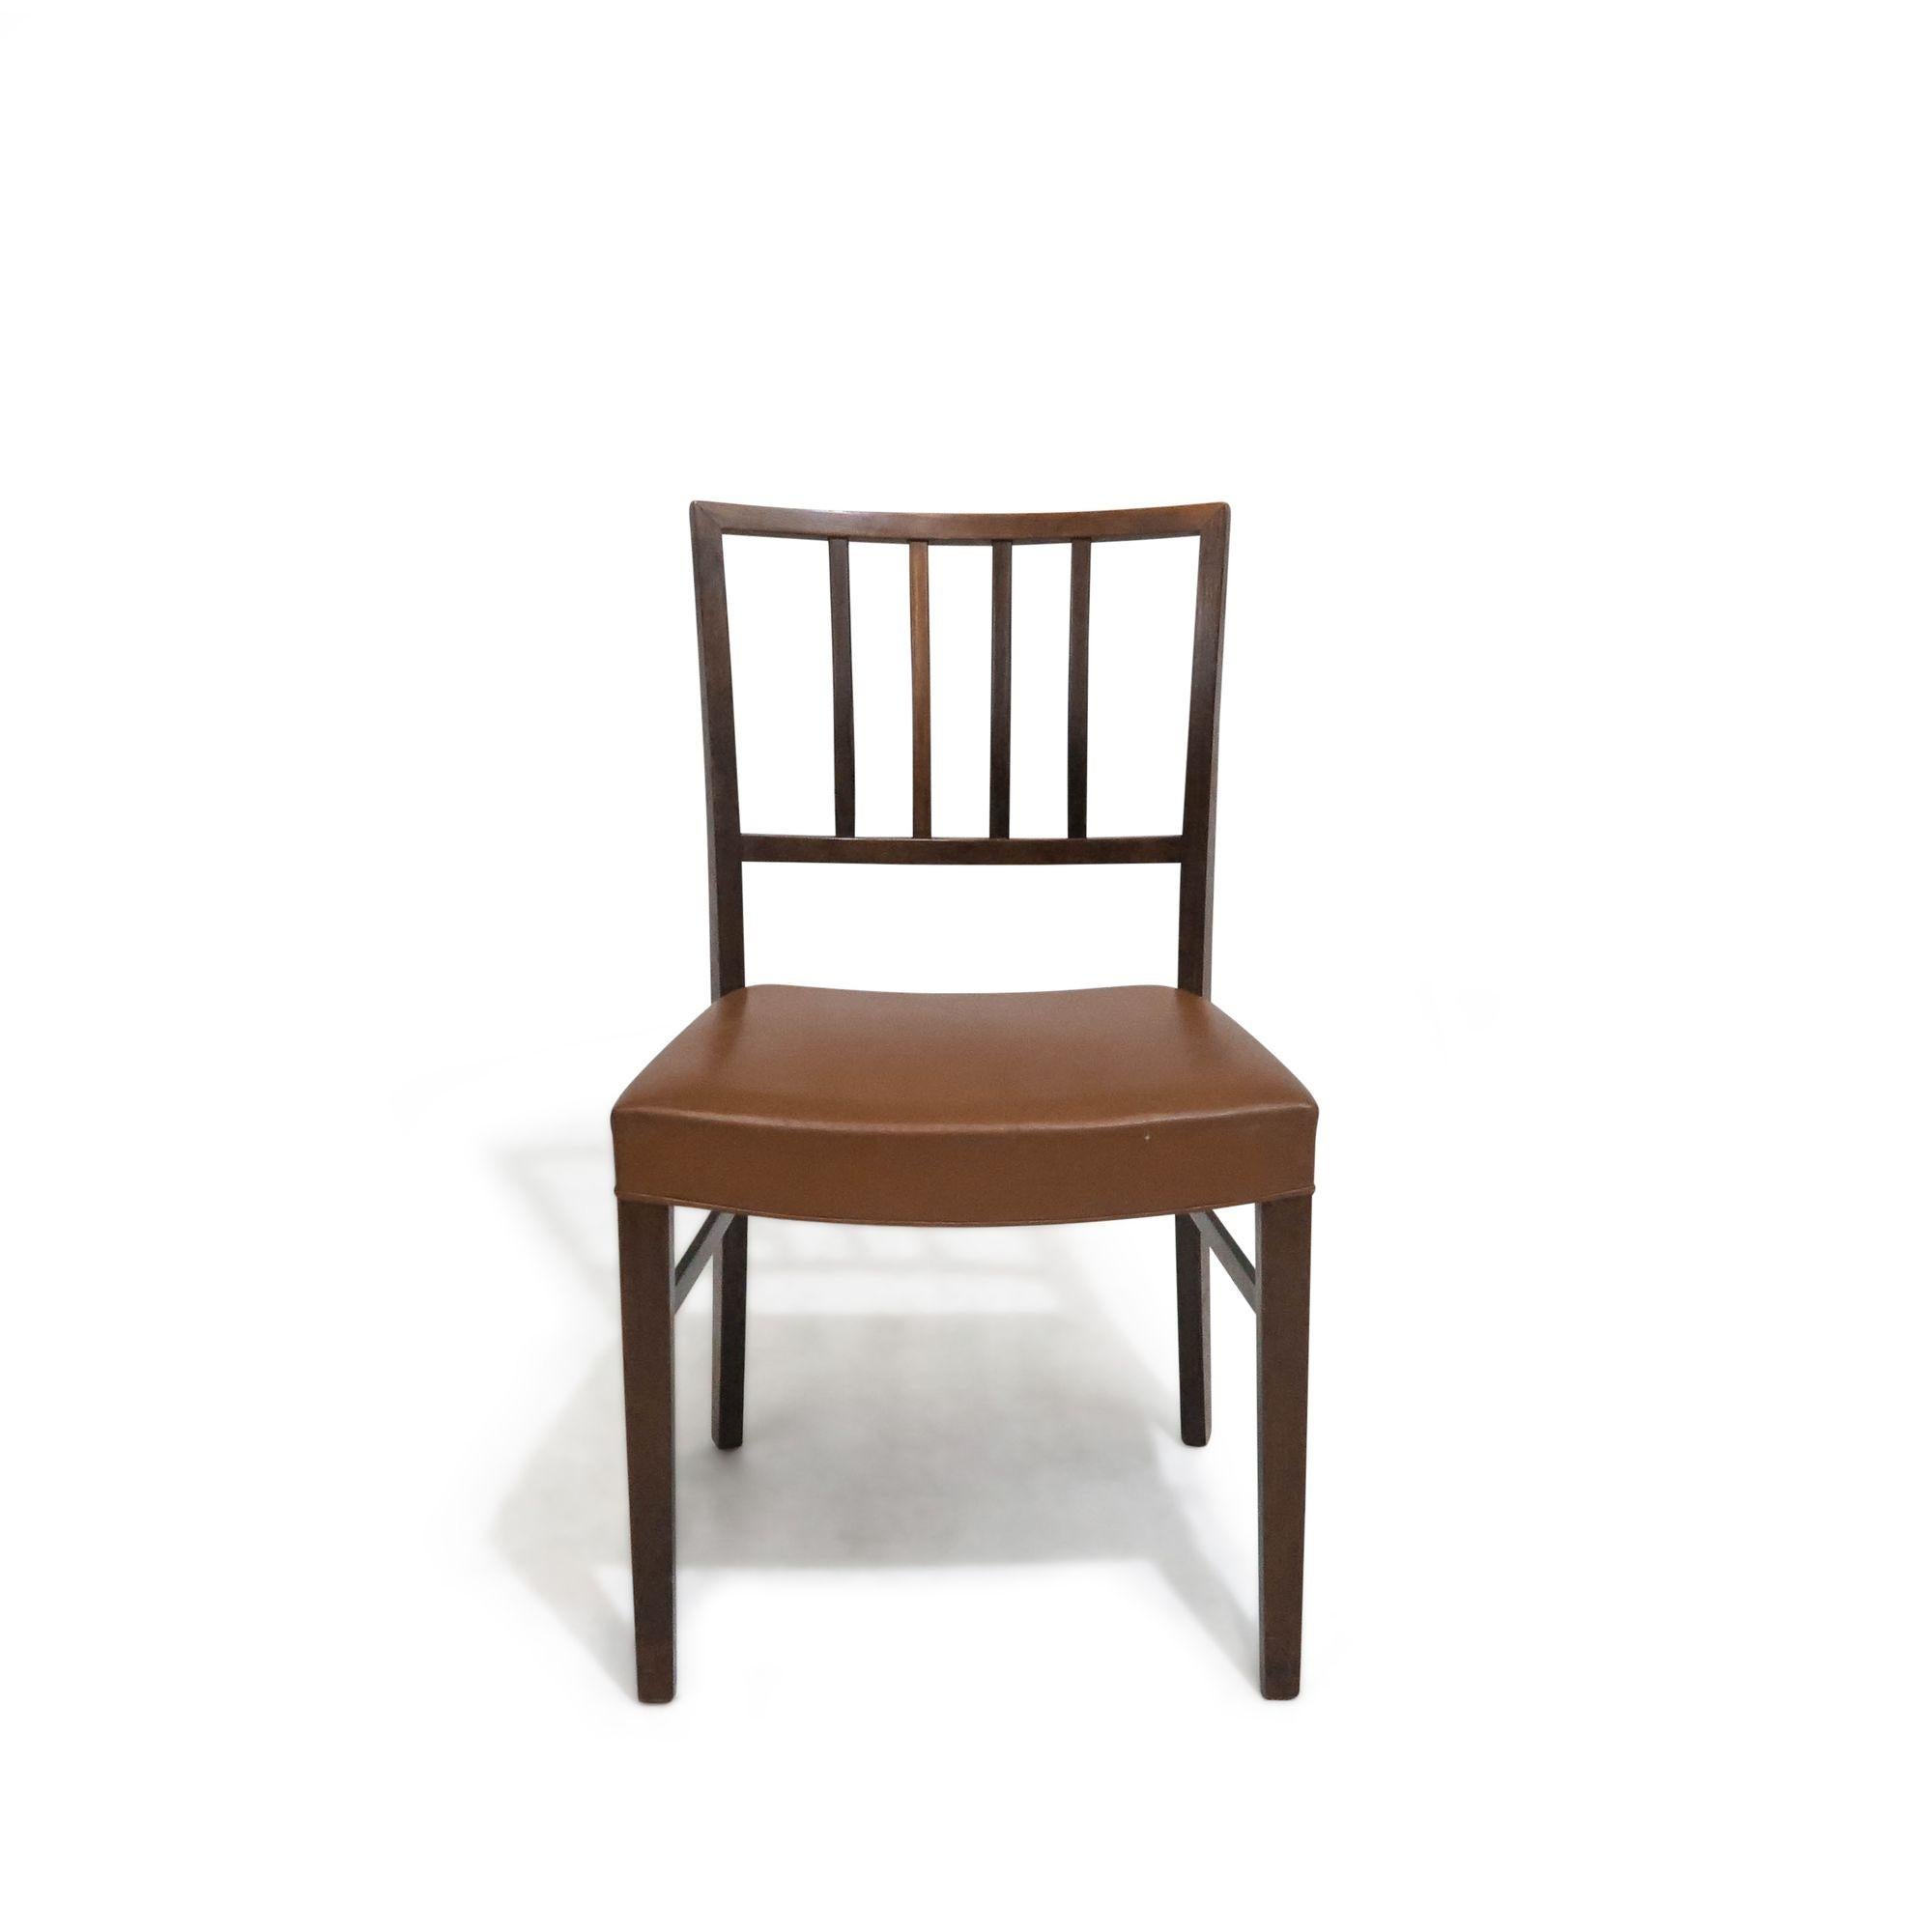 Satz von 6 Esszimmerstühlen in der Art von Jacob Kjaer, aus Palisanderholz mit minimalem Lattenrost, gepolstert mit dem originalen Sattelleder.
Die Stühle sind in gutem Originalzustand.
 
Abmessungen:
18,75'' x T 20,25'' X H 32,50''
Sitzhöhe